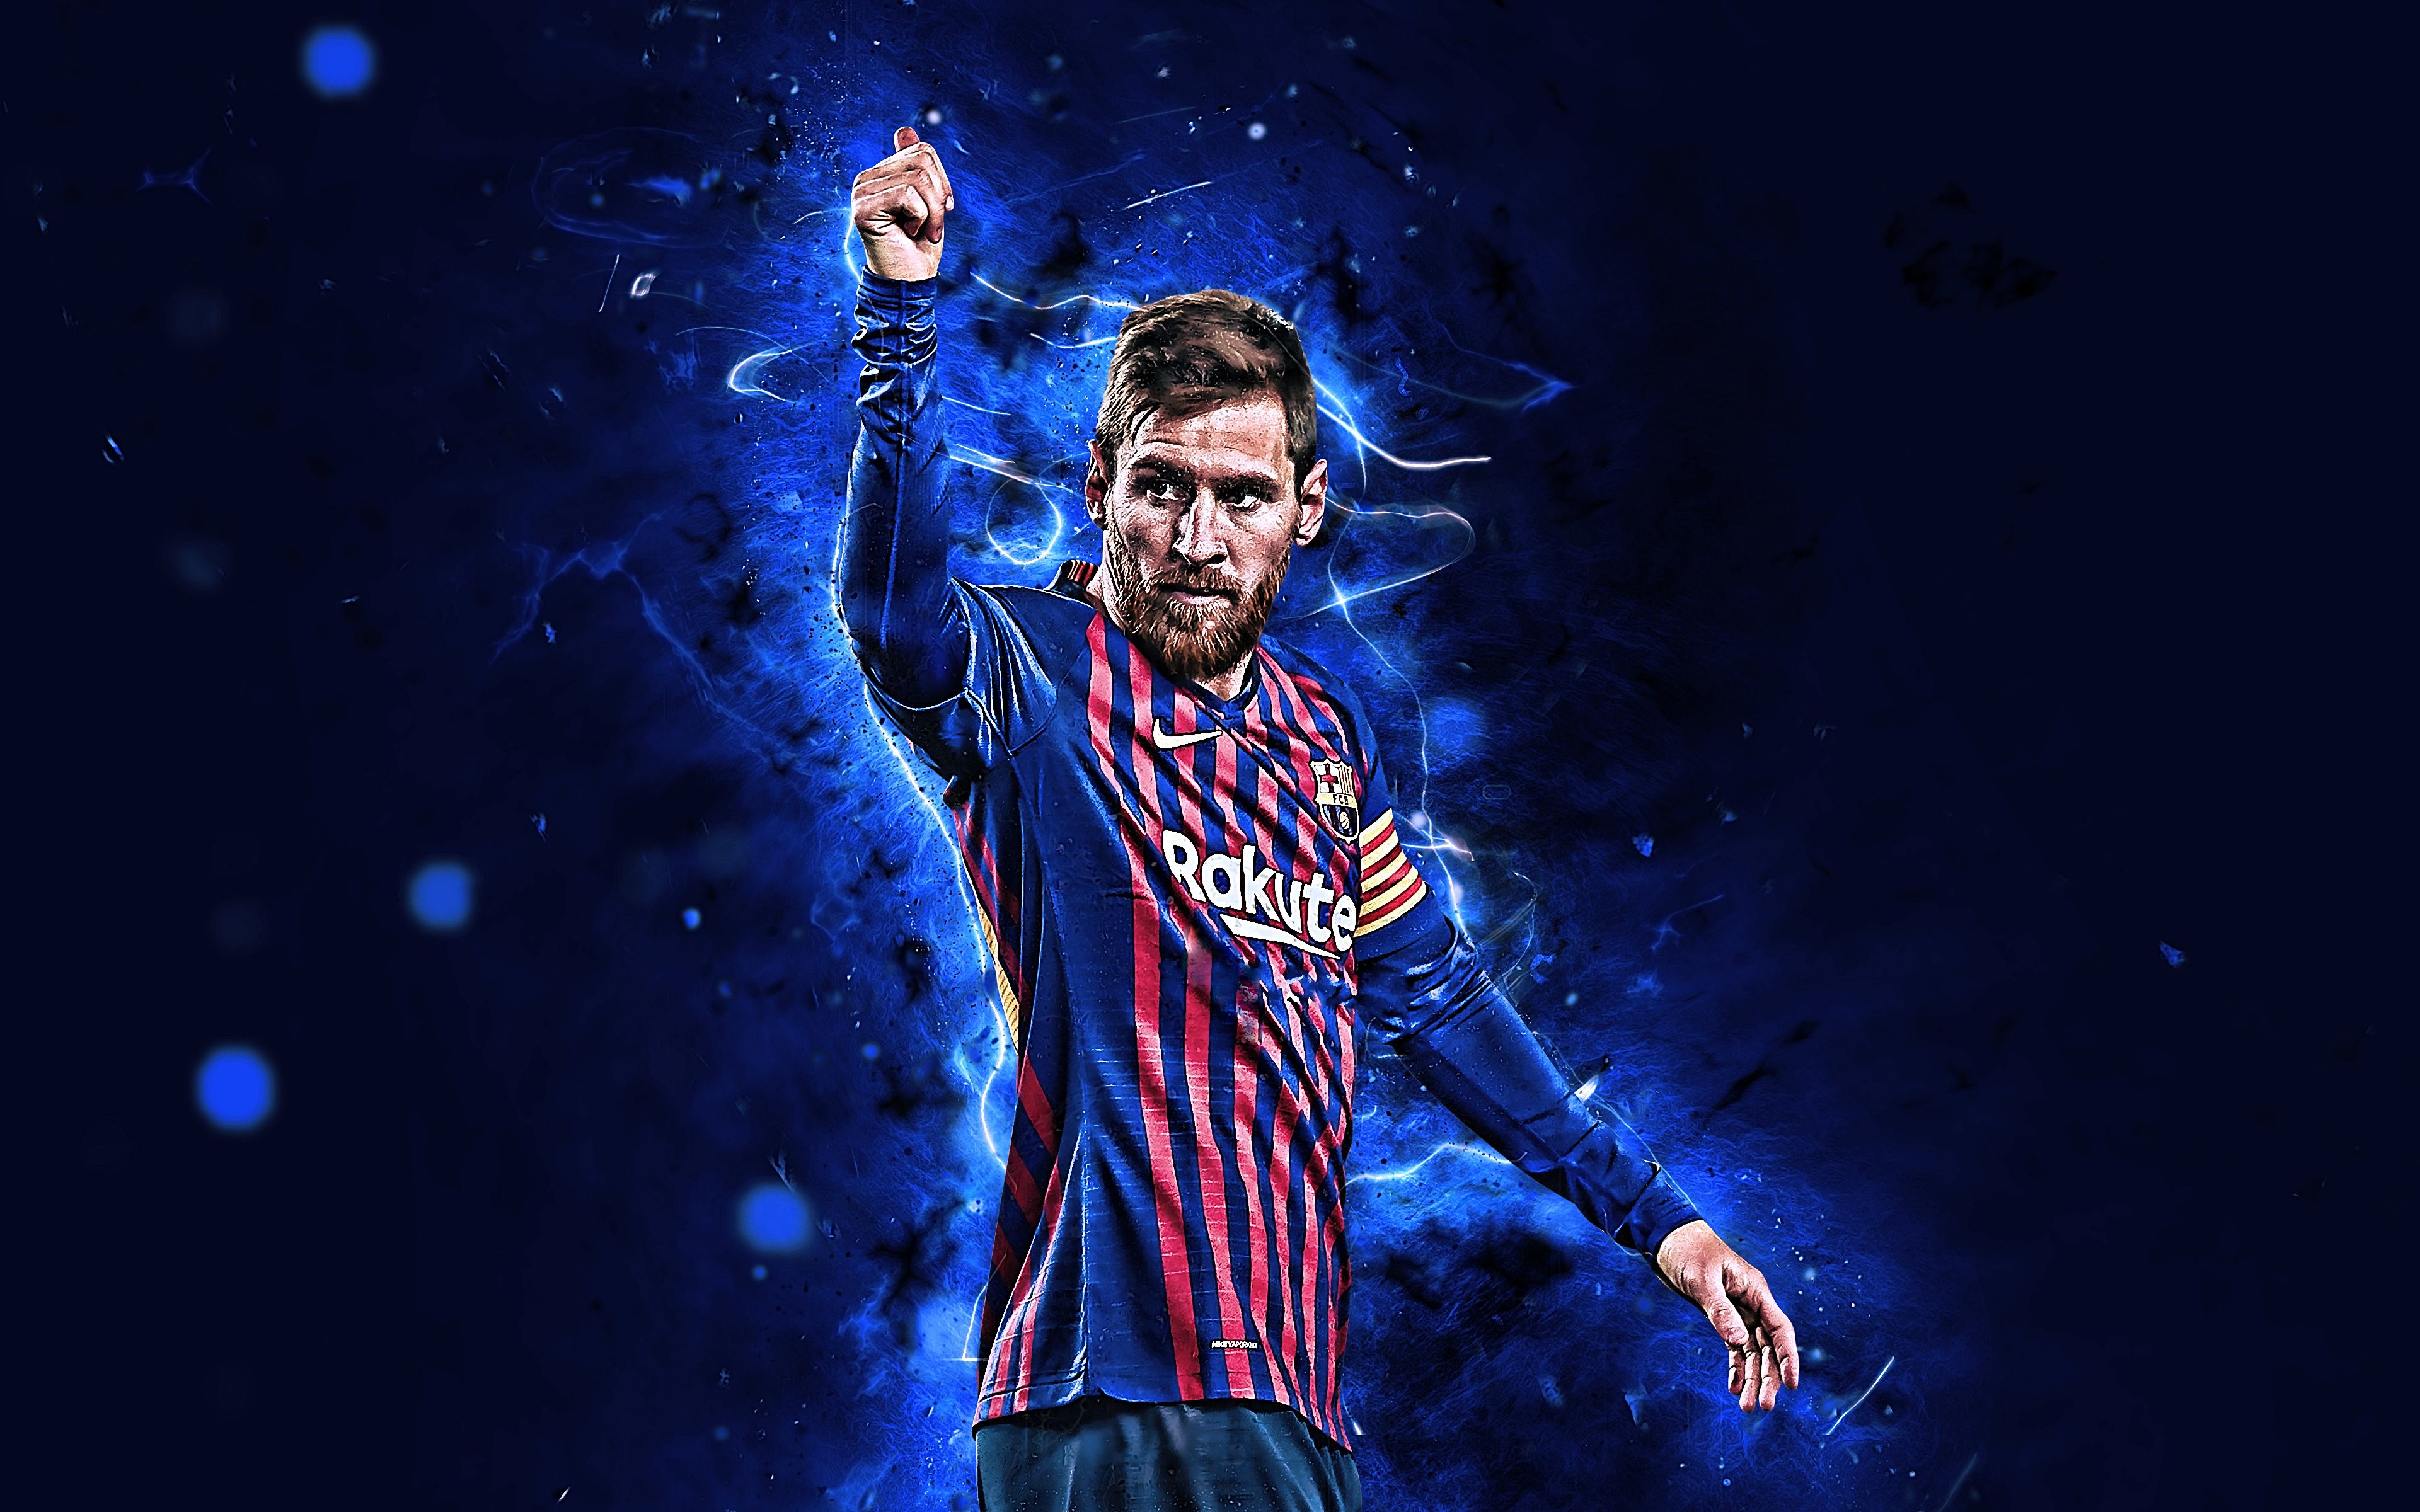 Messi 2022: Đã đến lúc chuẩn bị sẵn sàng cho trận chung kết World Cup 2022 với sự xuất hiện của Messi. Hình ảnh mới nhất về Siêu sao này sẽ khiến bạn không khỏi háo hức chờ đợi giải đấu này sắp tới. Xem ngay để cảm nhận sự giàu cảm xúc và kỳ vọng đang dâng trào!